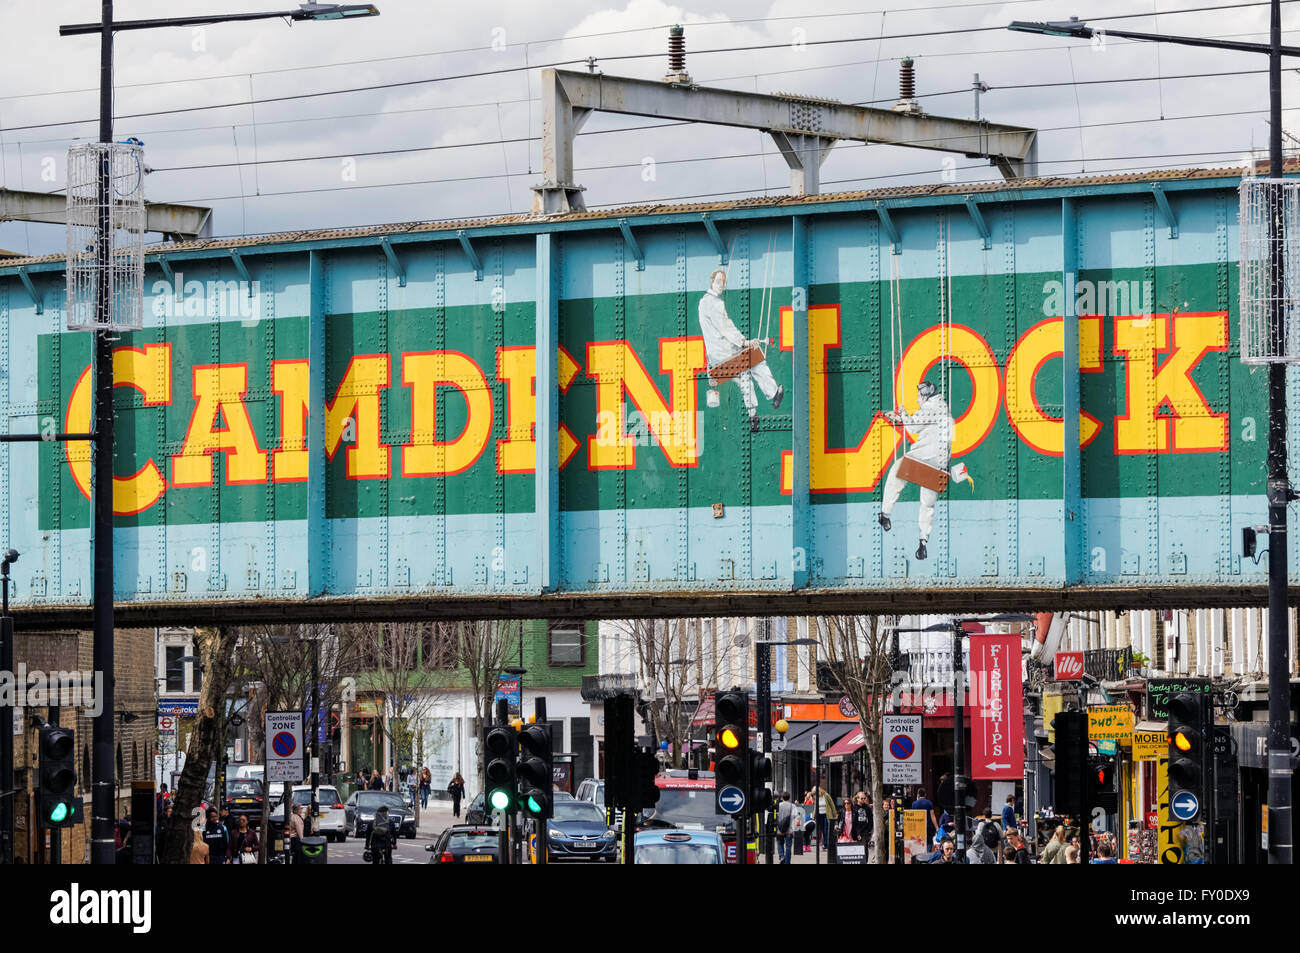 Pont de chemin de fer Camden Lock au-dessus de Camden High Street, Camden Town, Londres Angleterre Royaume-Uni Banque D'Images